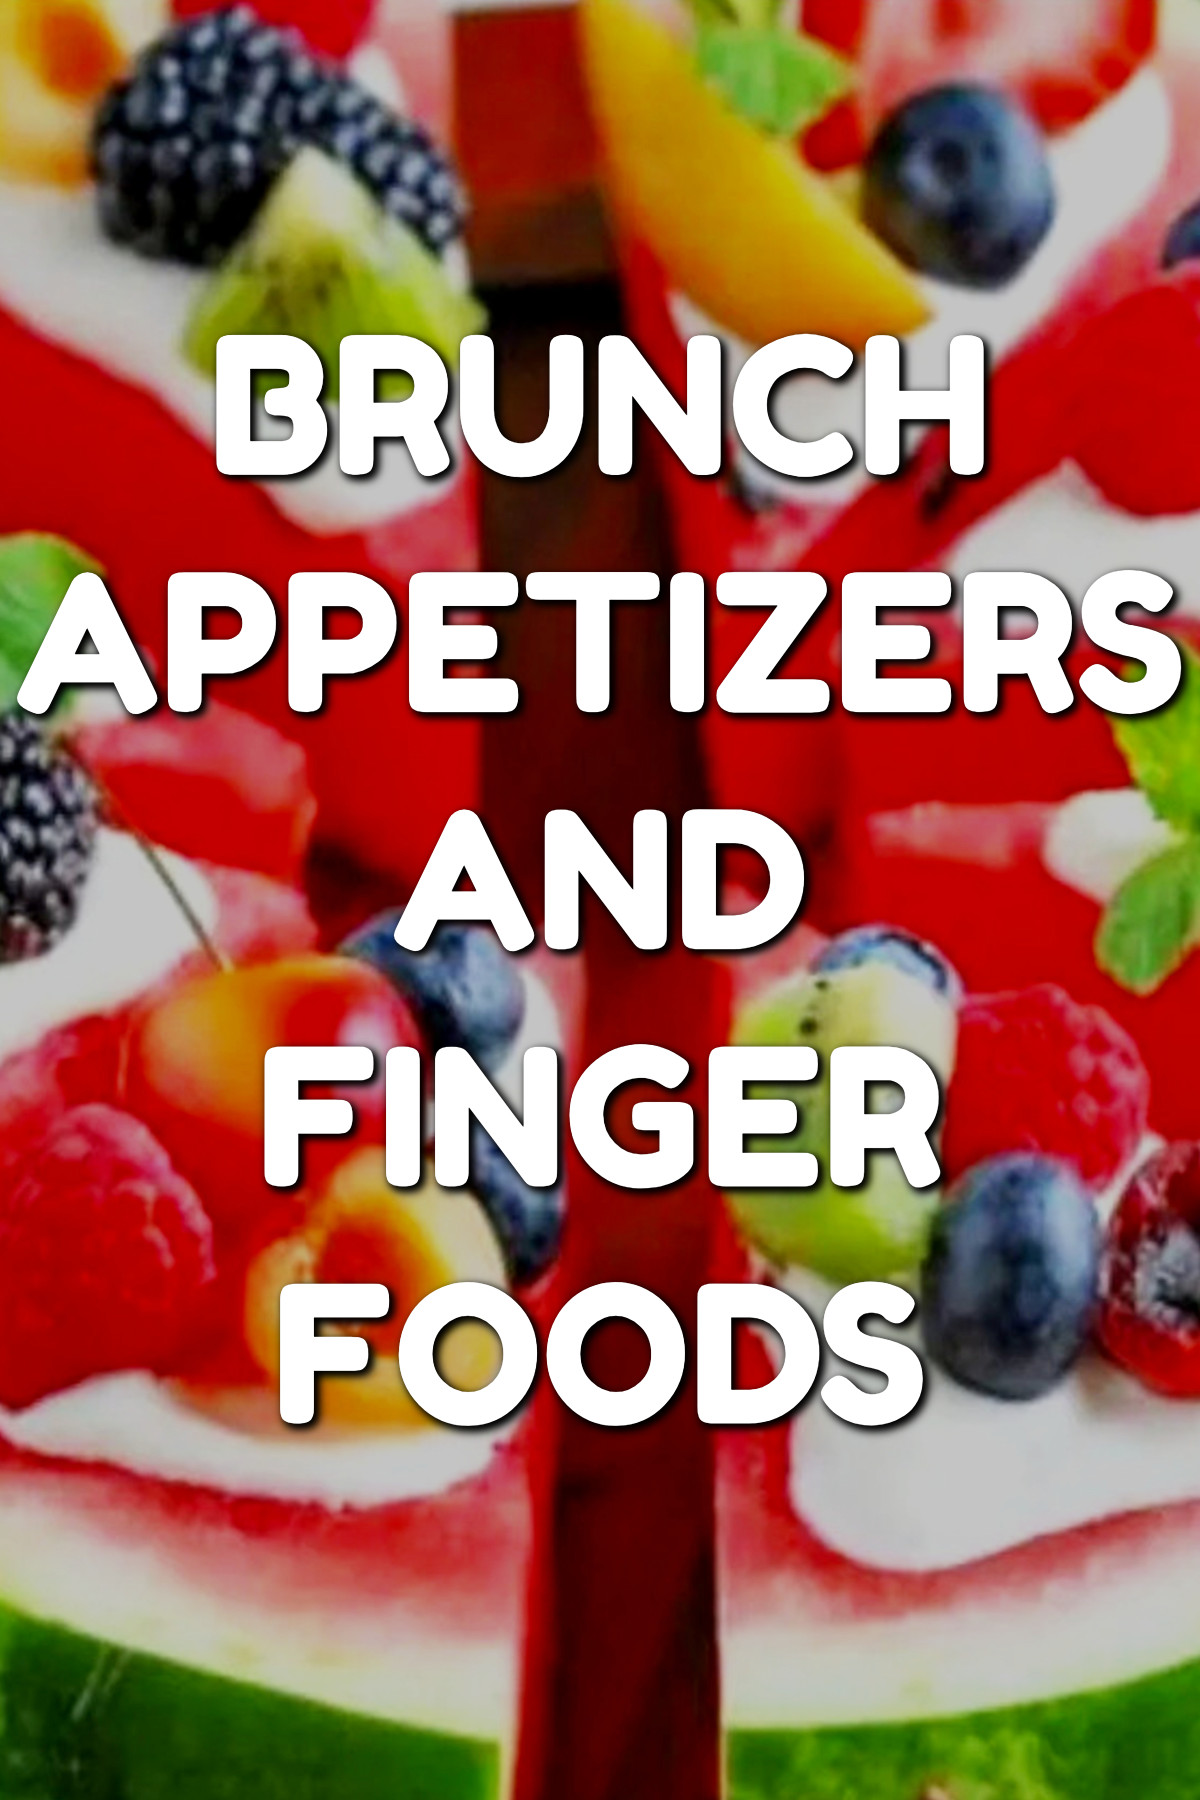 brunch food ideas - Cold brunch appetizers bites and finger foods